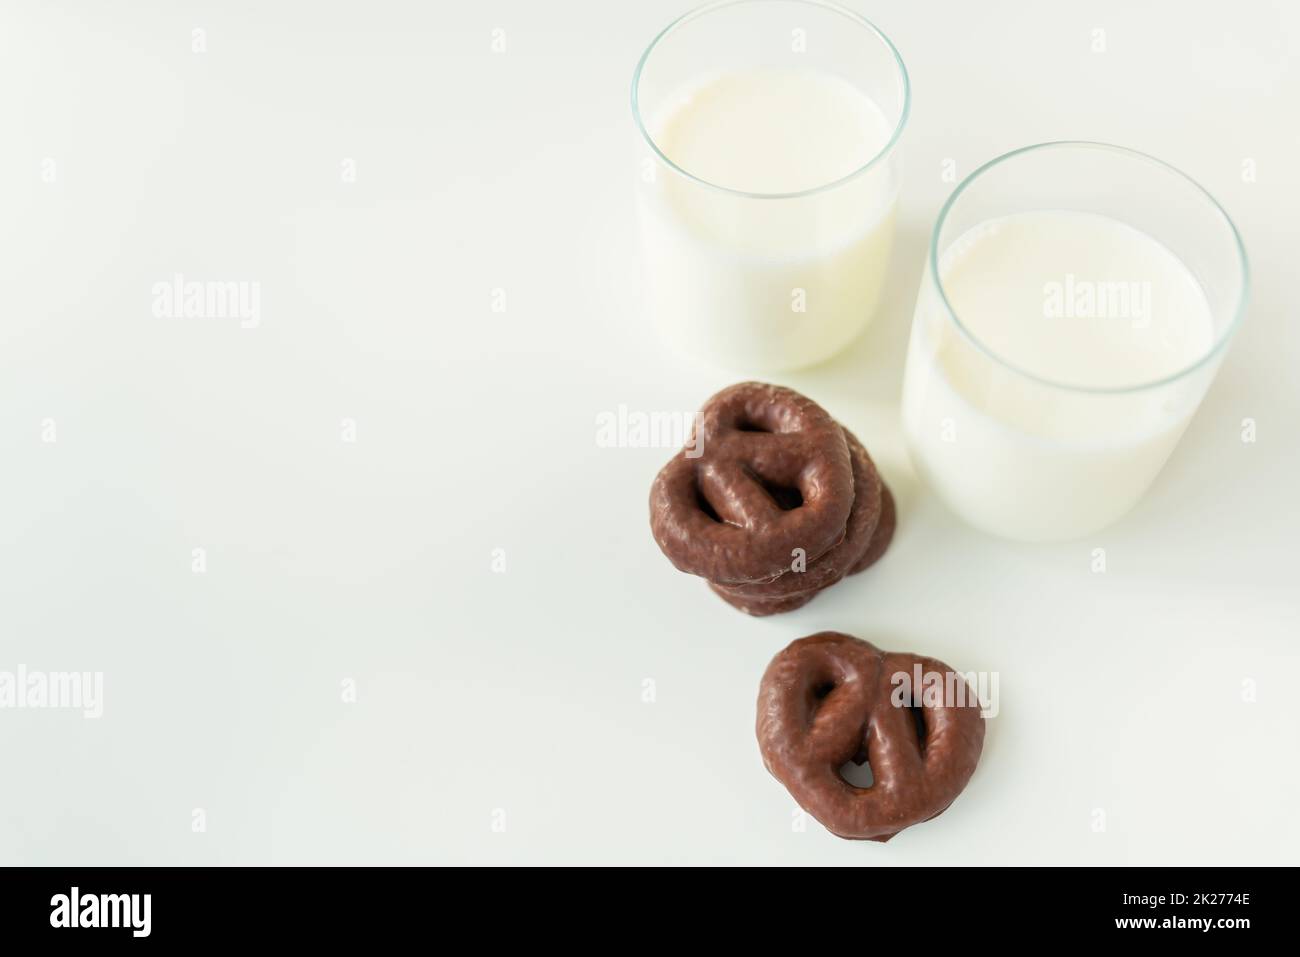 Biscotti di pan di zenzero al cioccolato giacono su un tavolo bianco insieme ad un bicchiere di latte. Luogo per un'iscrizione. Foto Stock